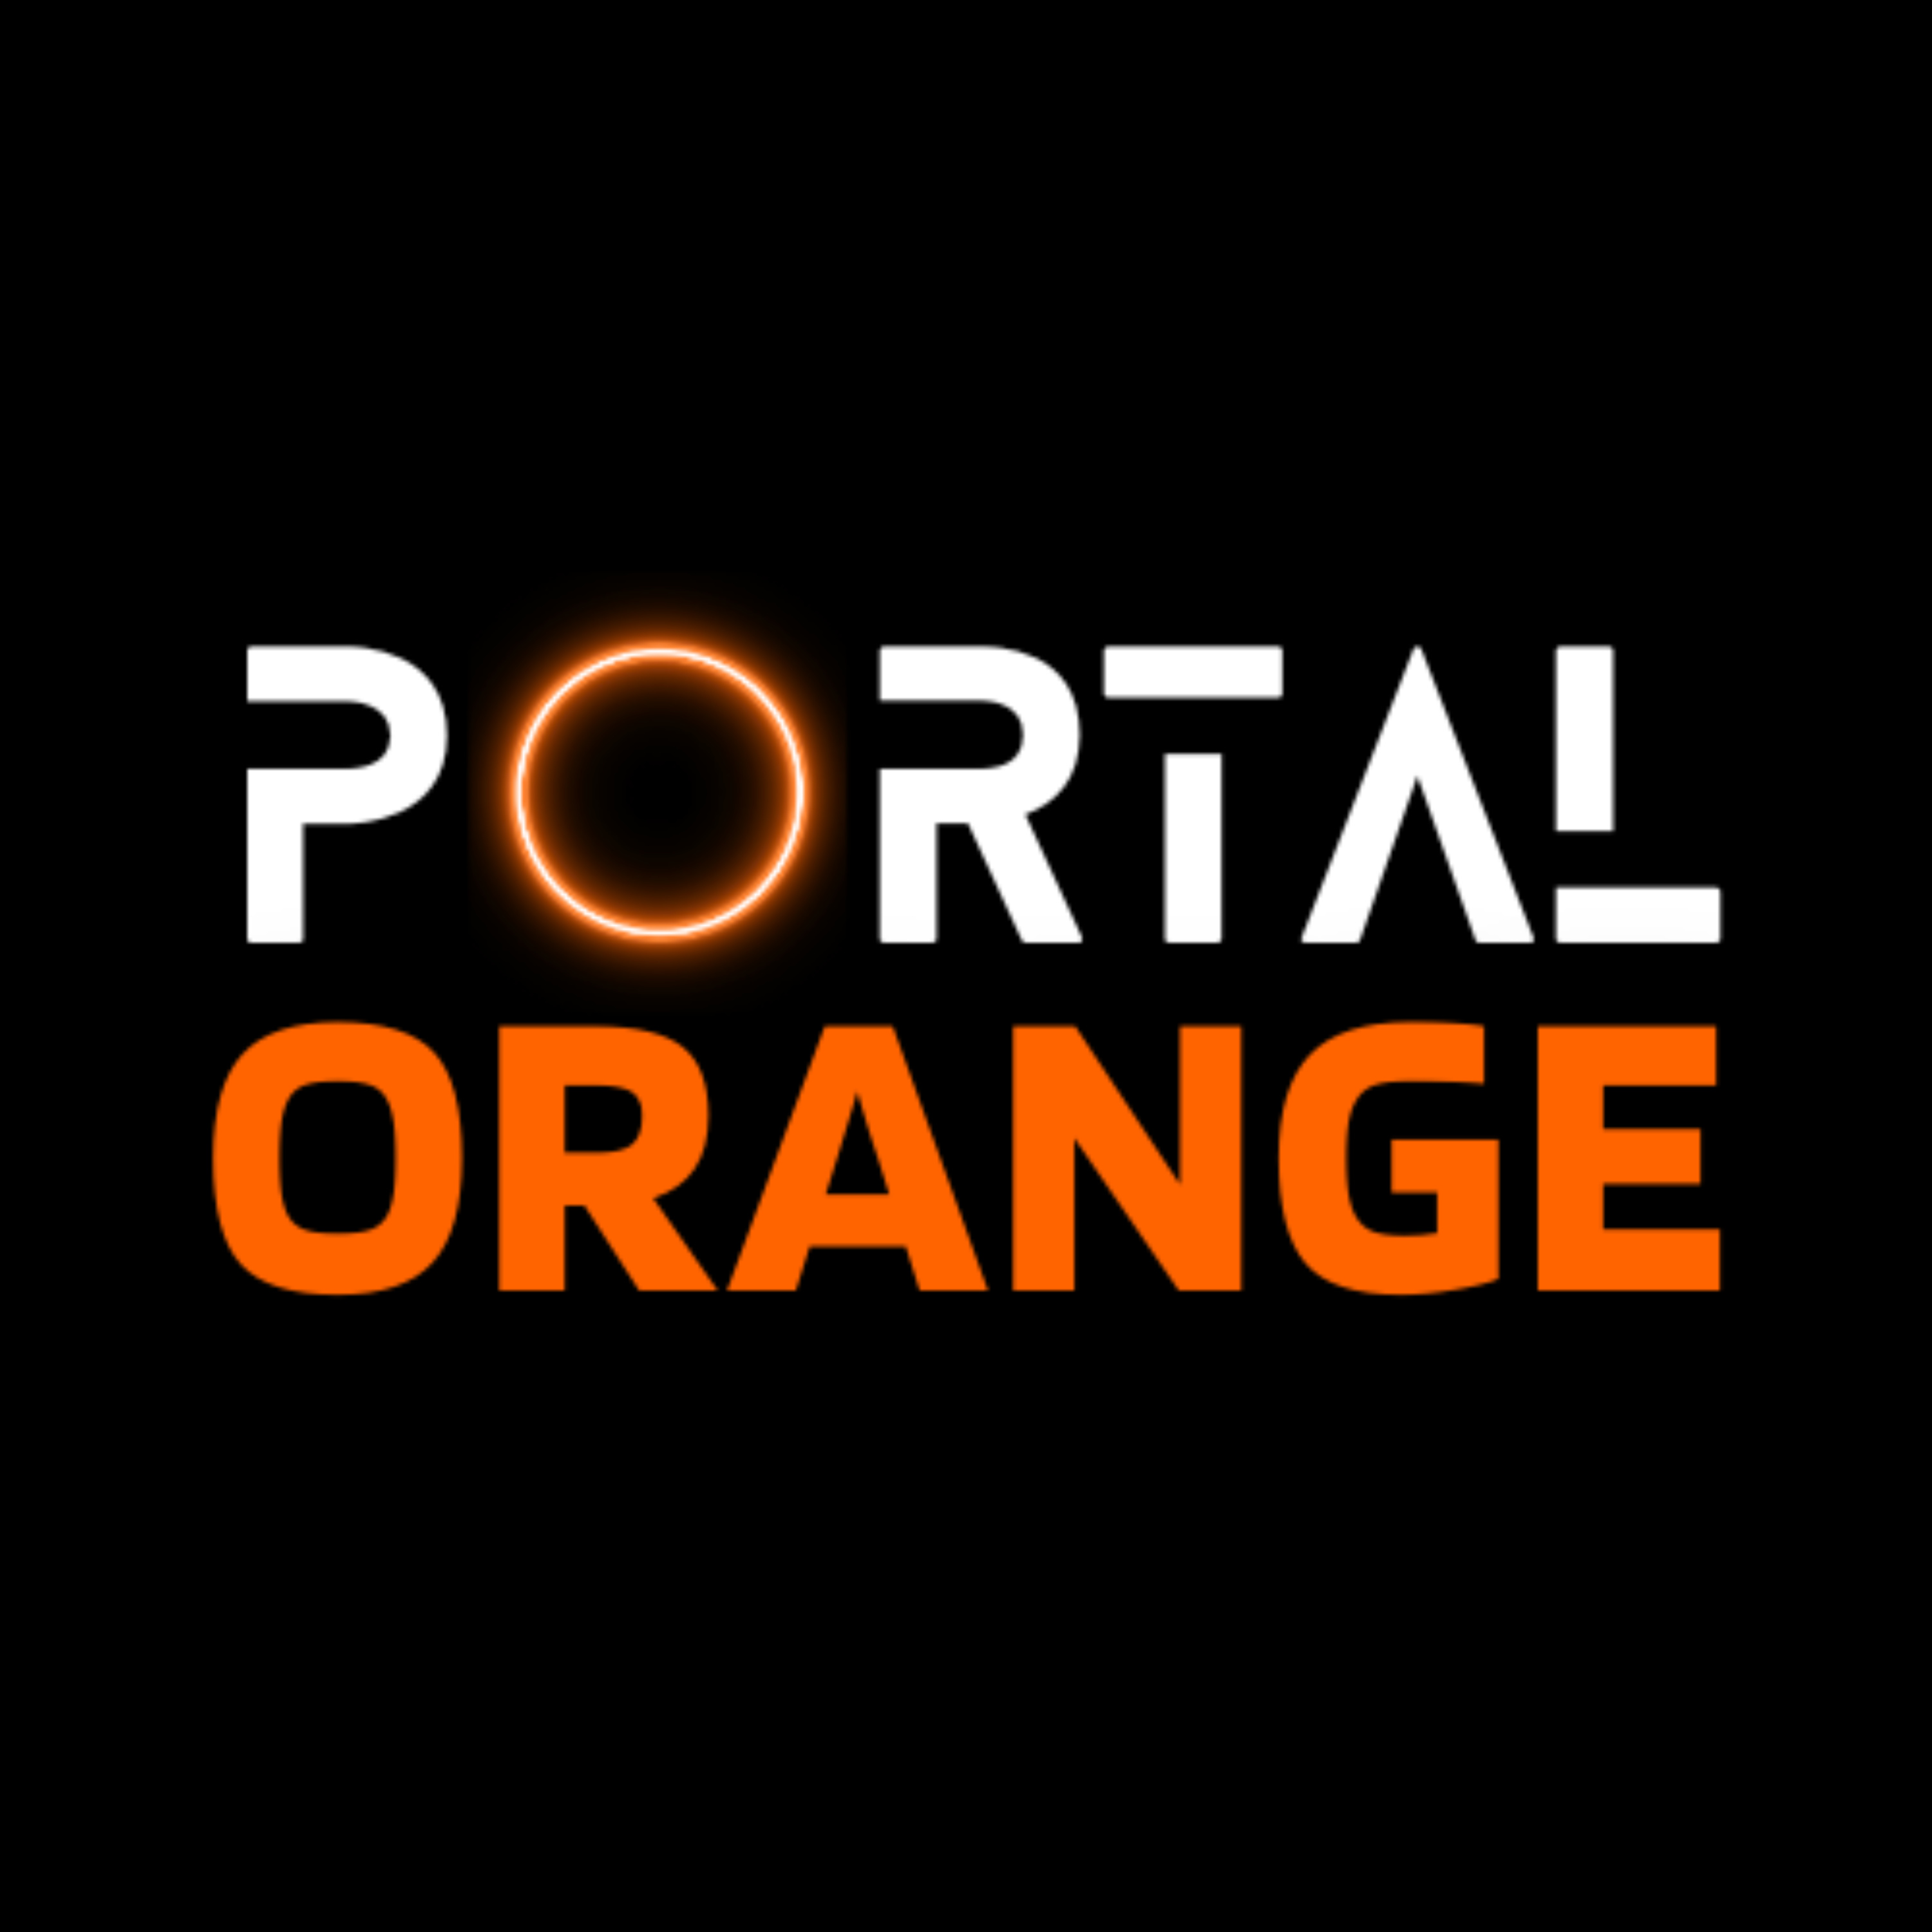 Portal Orange